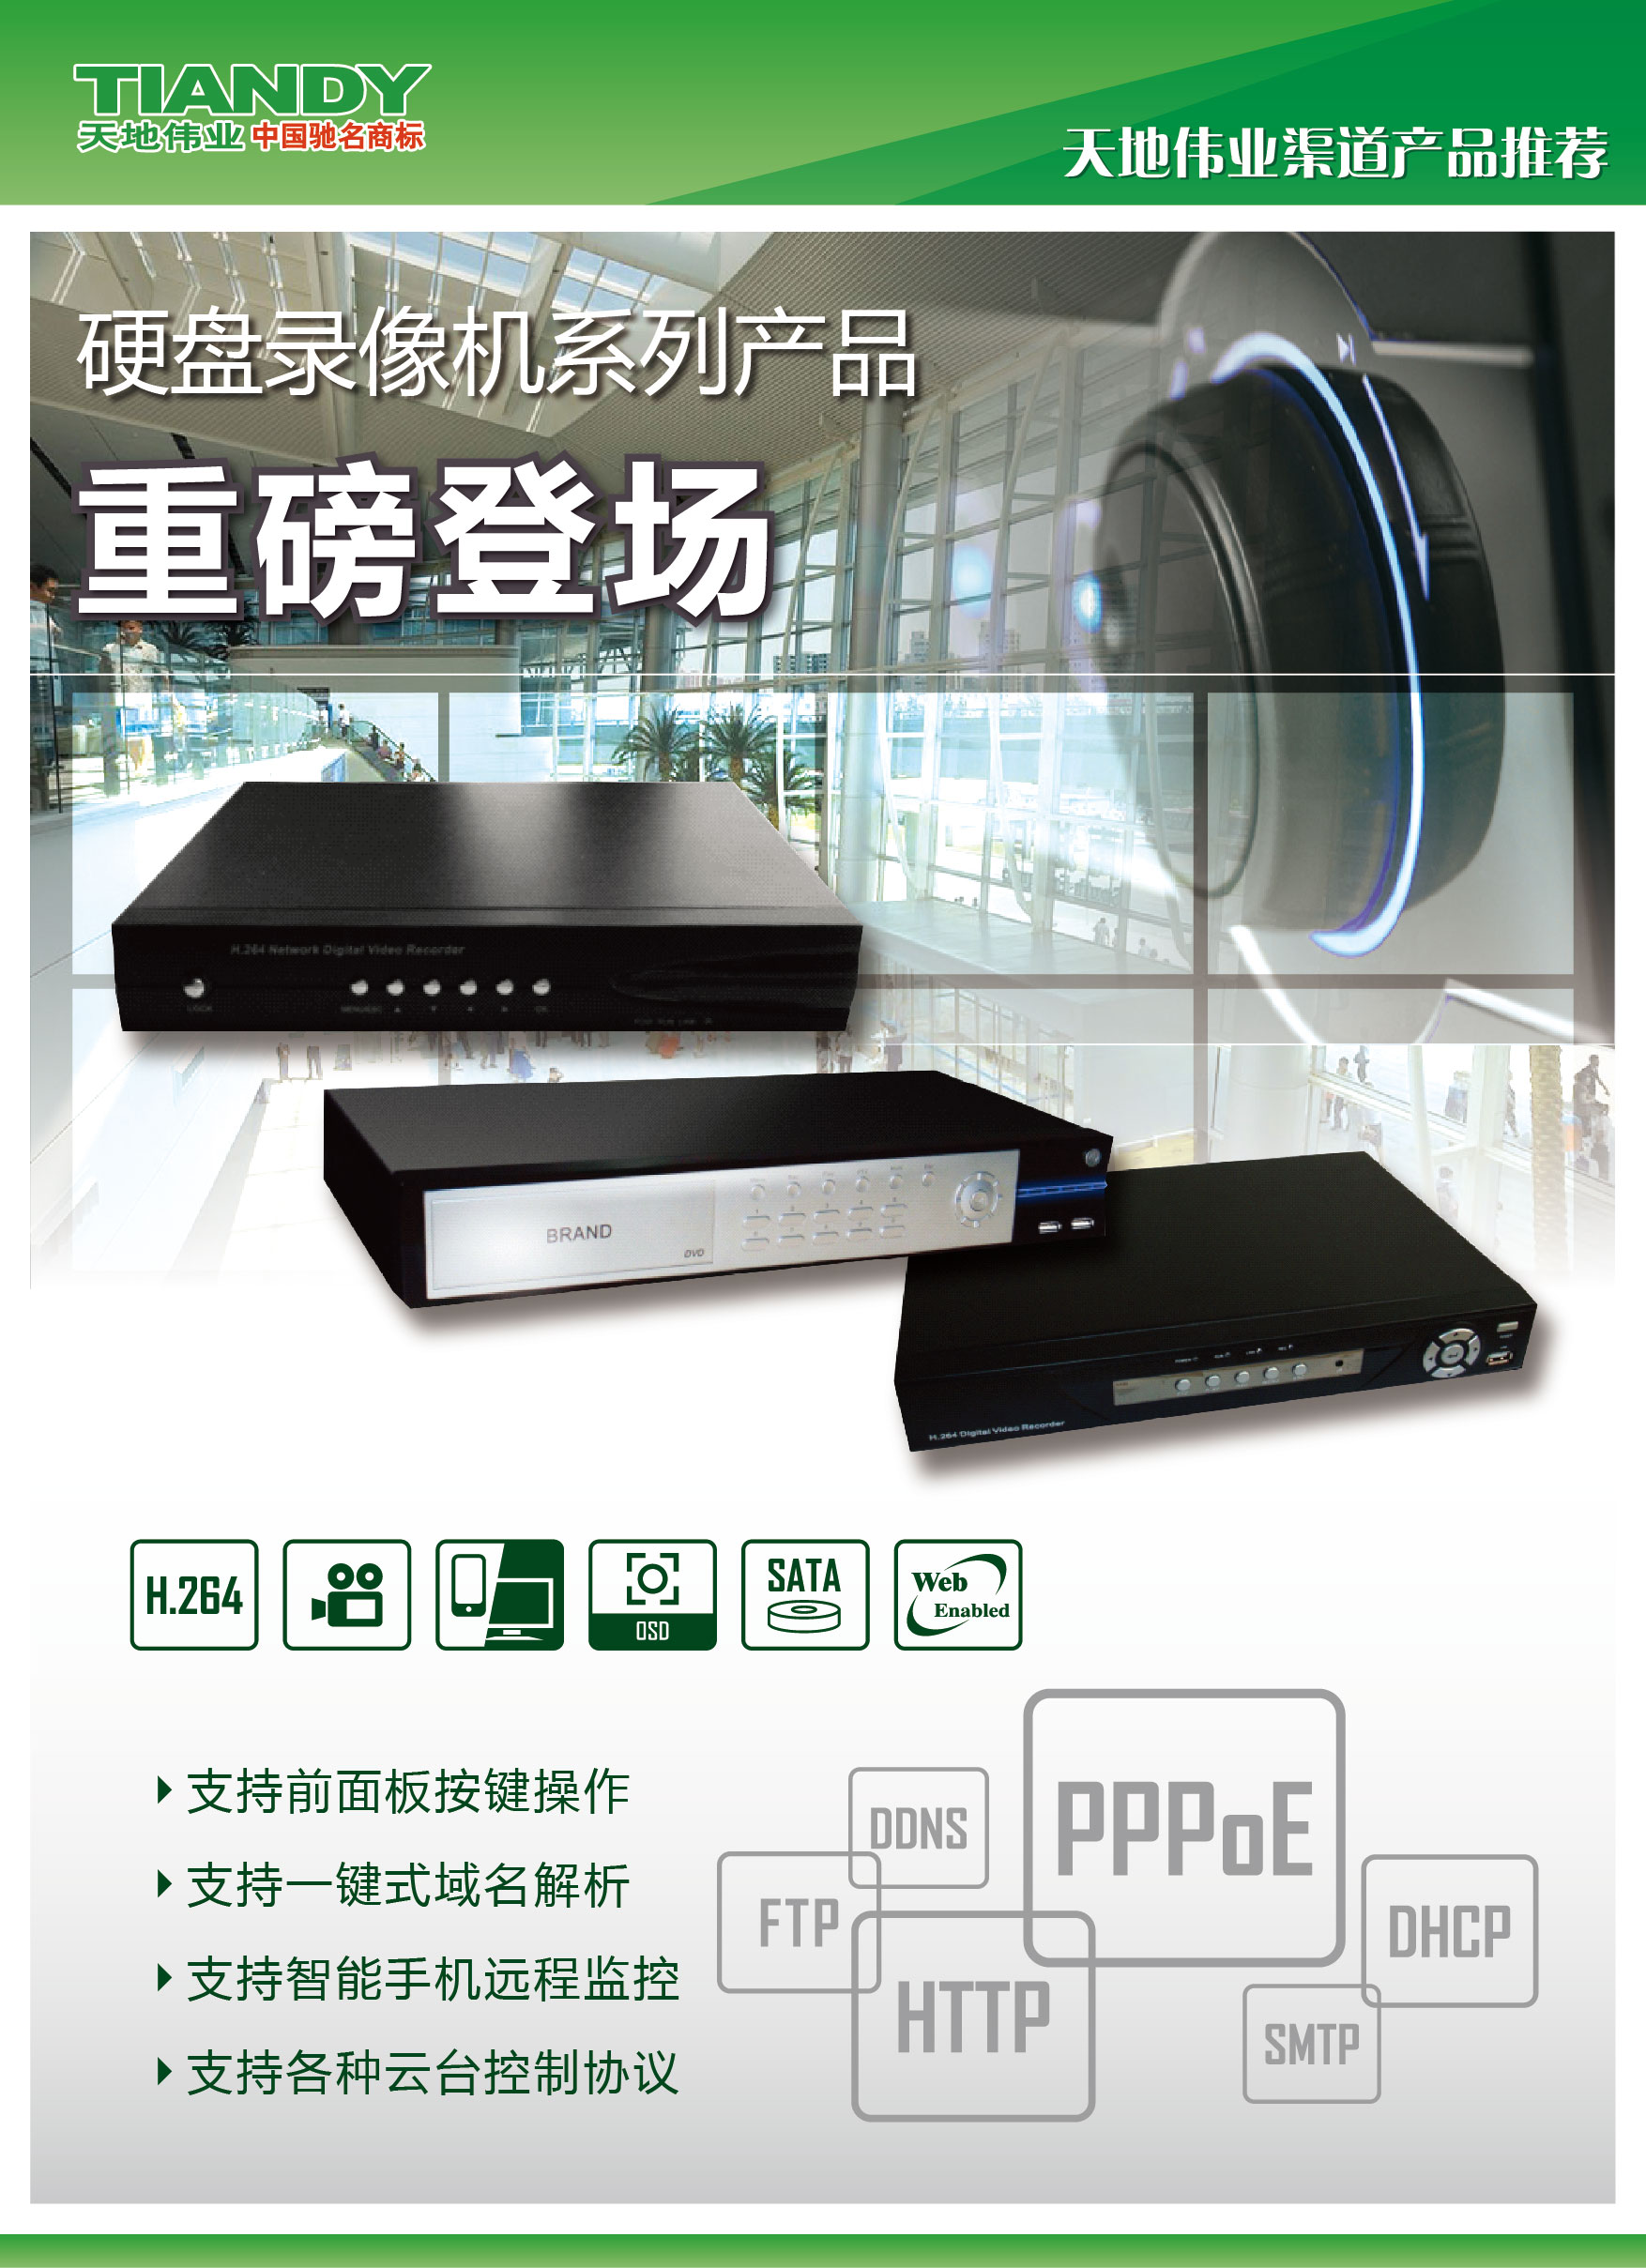 天地伟业TC-2800AN-N4-S2 4路网络硬盘录像报价性能参数说明